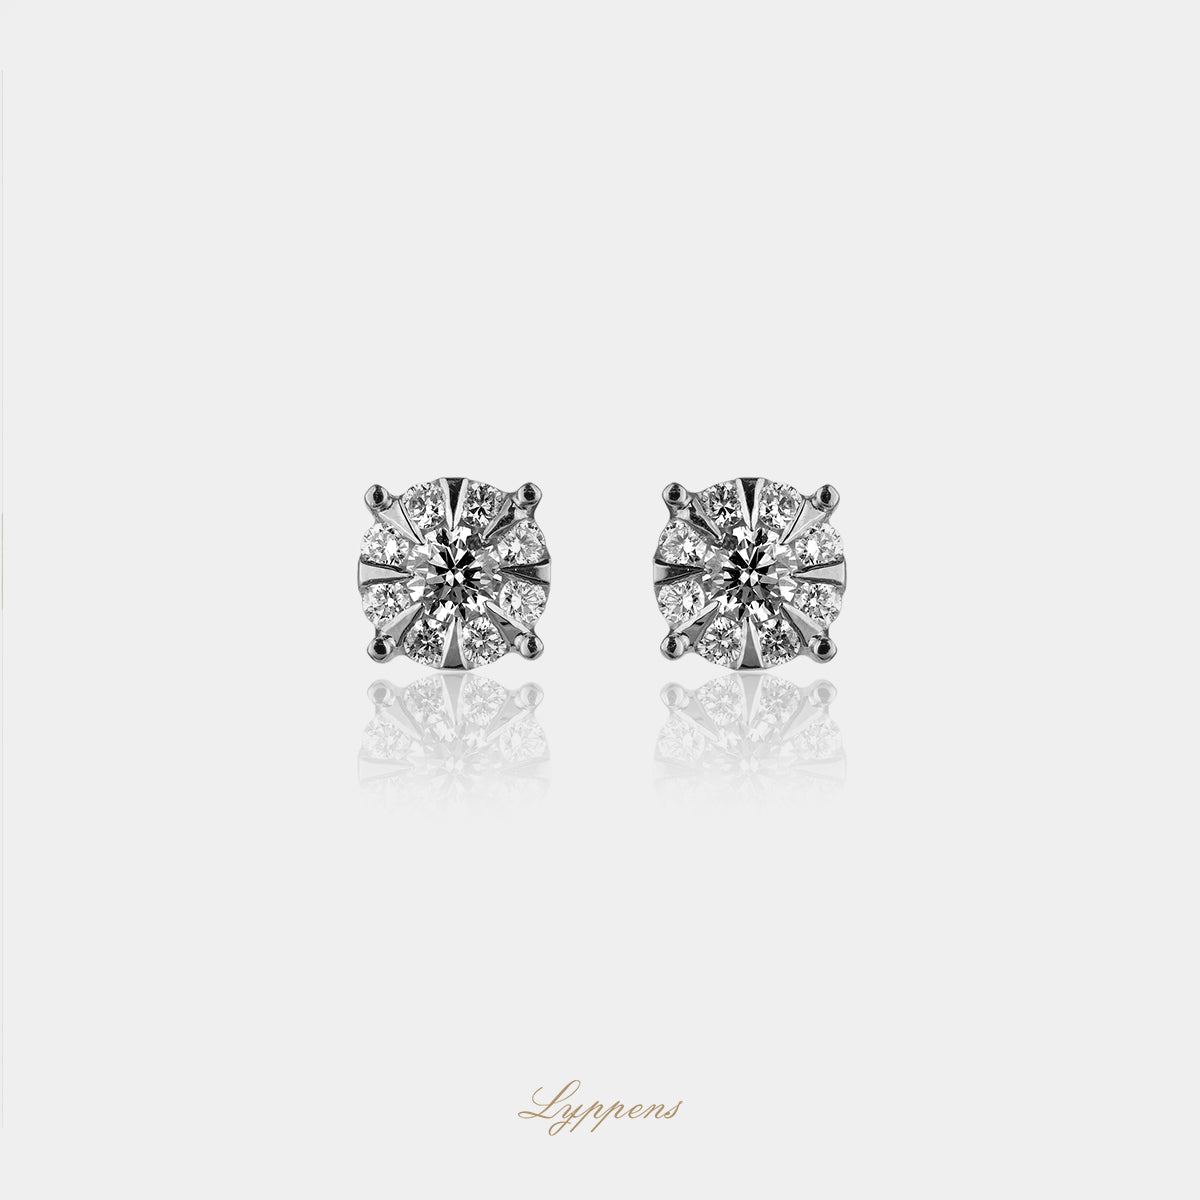 White gold rosette earrings with diamonds